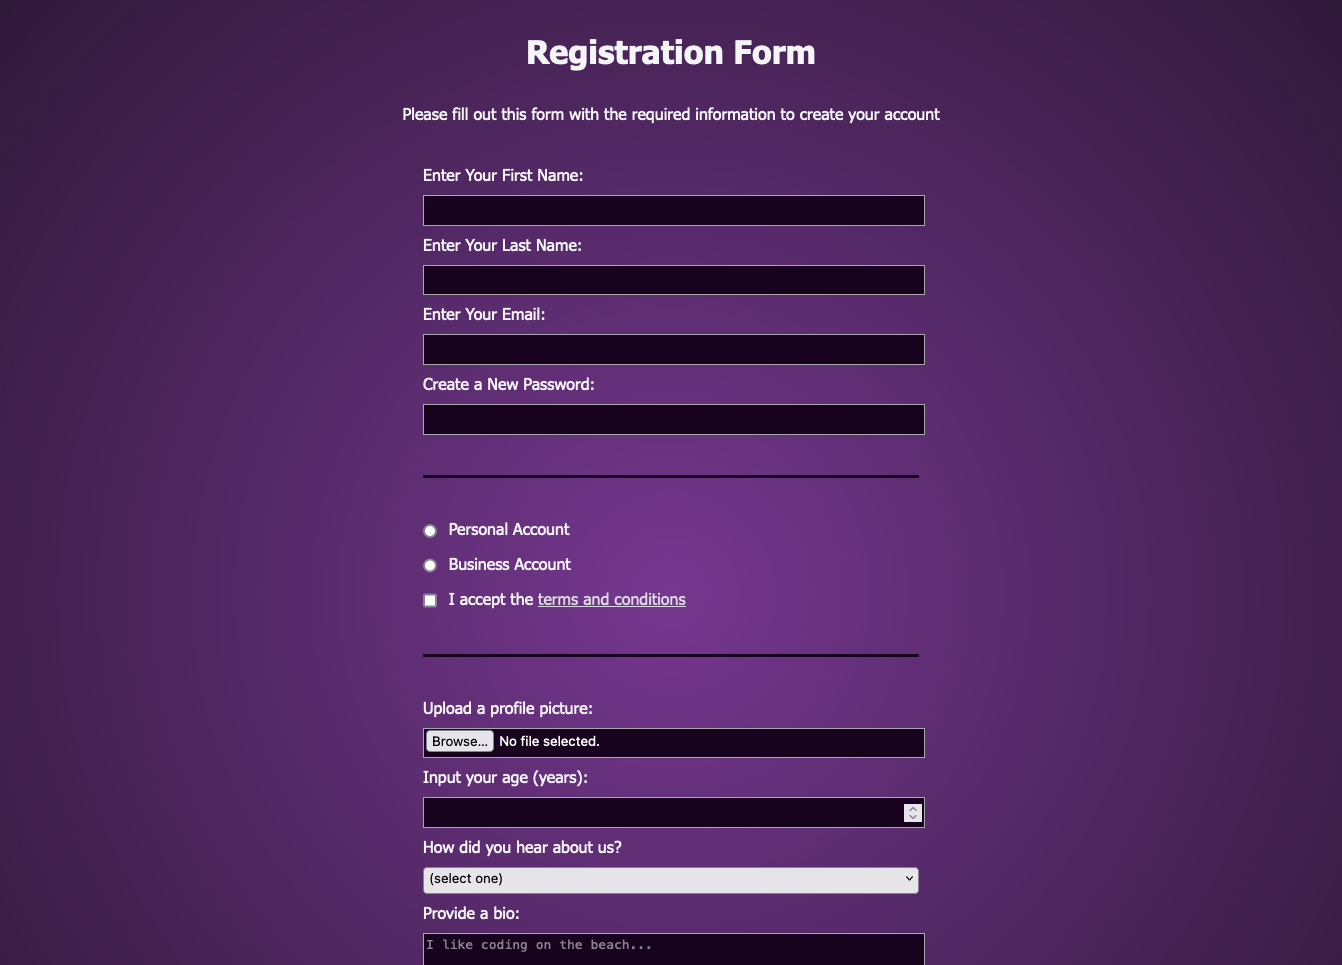 Screen capture of a basic user registation form for a website